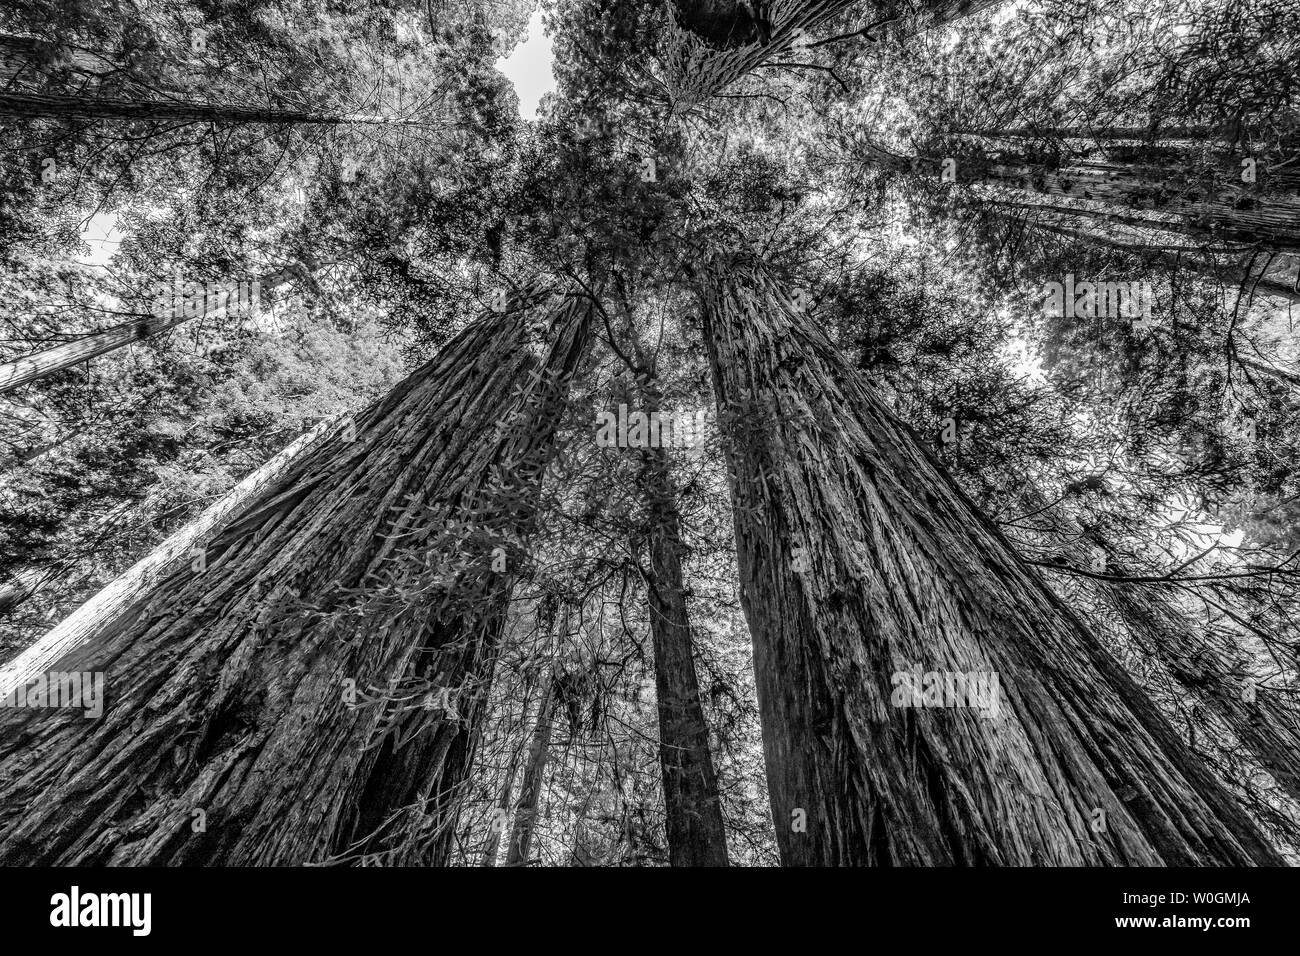 Grüne hoch aufragenden Redwoods National Park Newton B Drury Antrieb Crescent City in Kalifornien. Die höchsten Bäume der Welt, 1000 Jahre alte, Größe große Gebäude Stockfoto